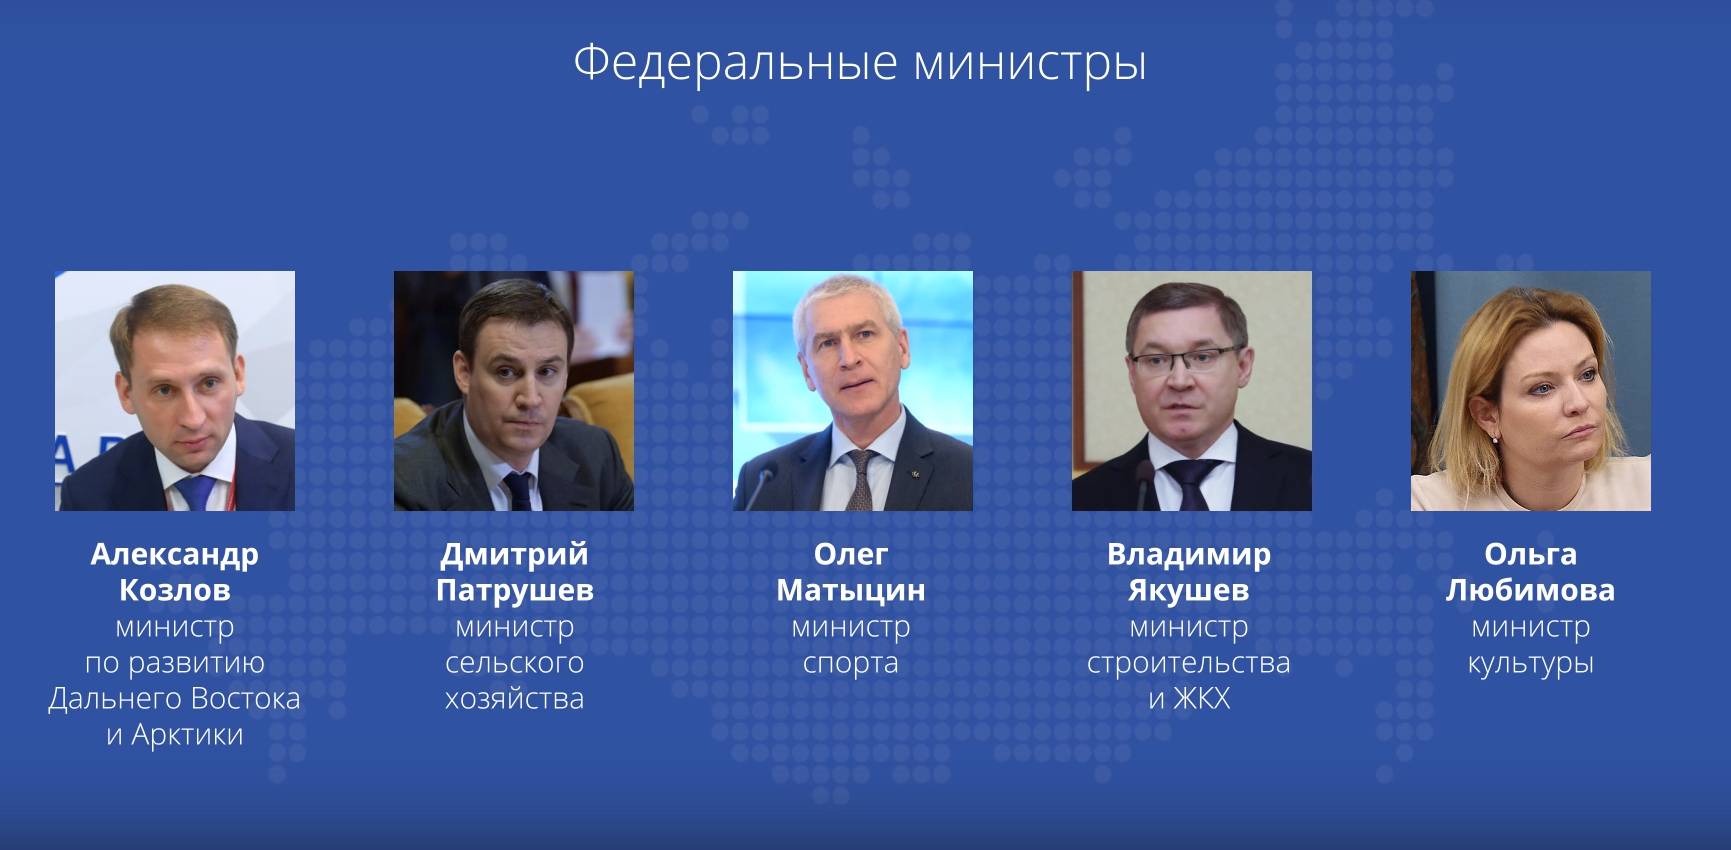 Министры правительства РФ 2021